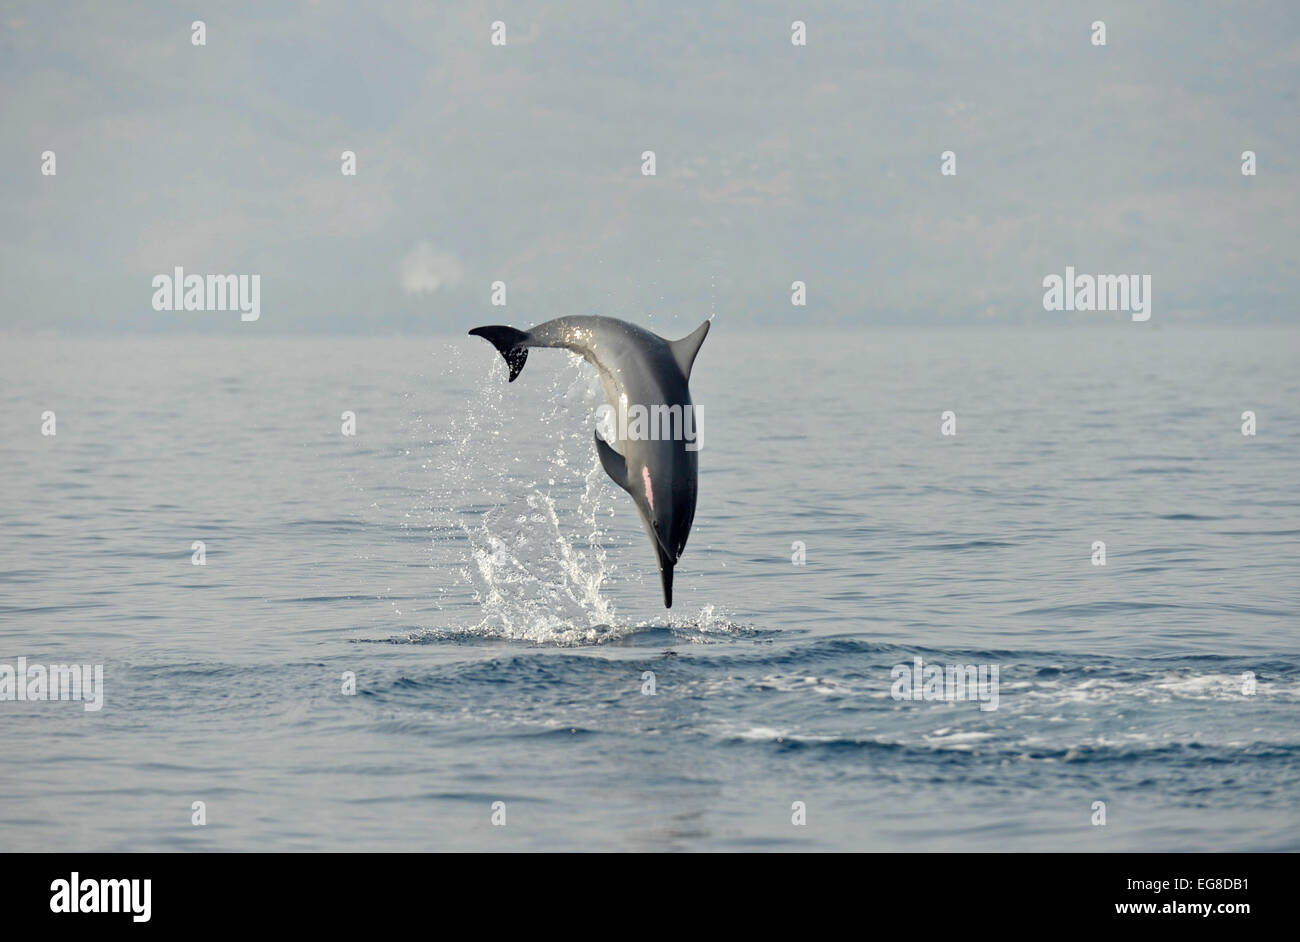 Delfines (Stenella longirostris) saltando desde el mar, Bali, Indonesia, octubre Foto de stock